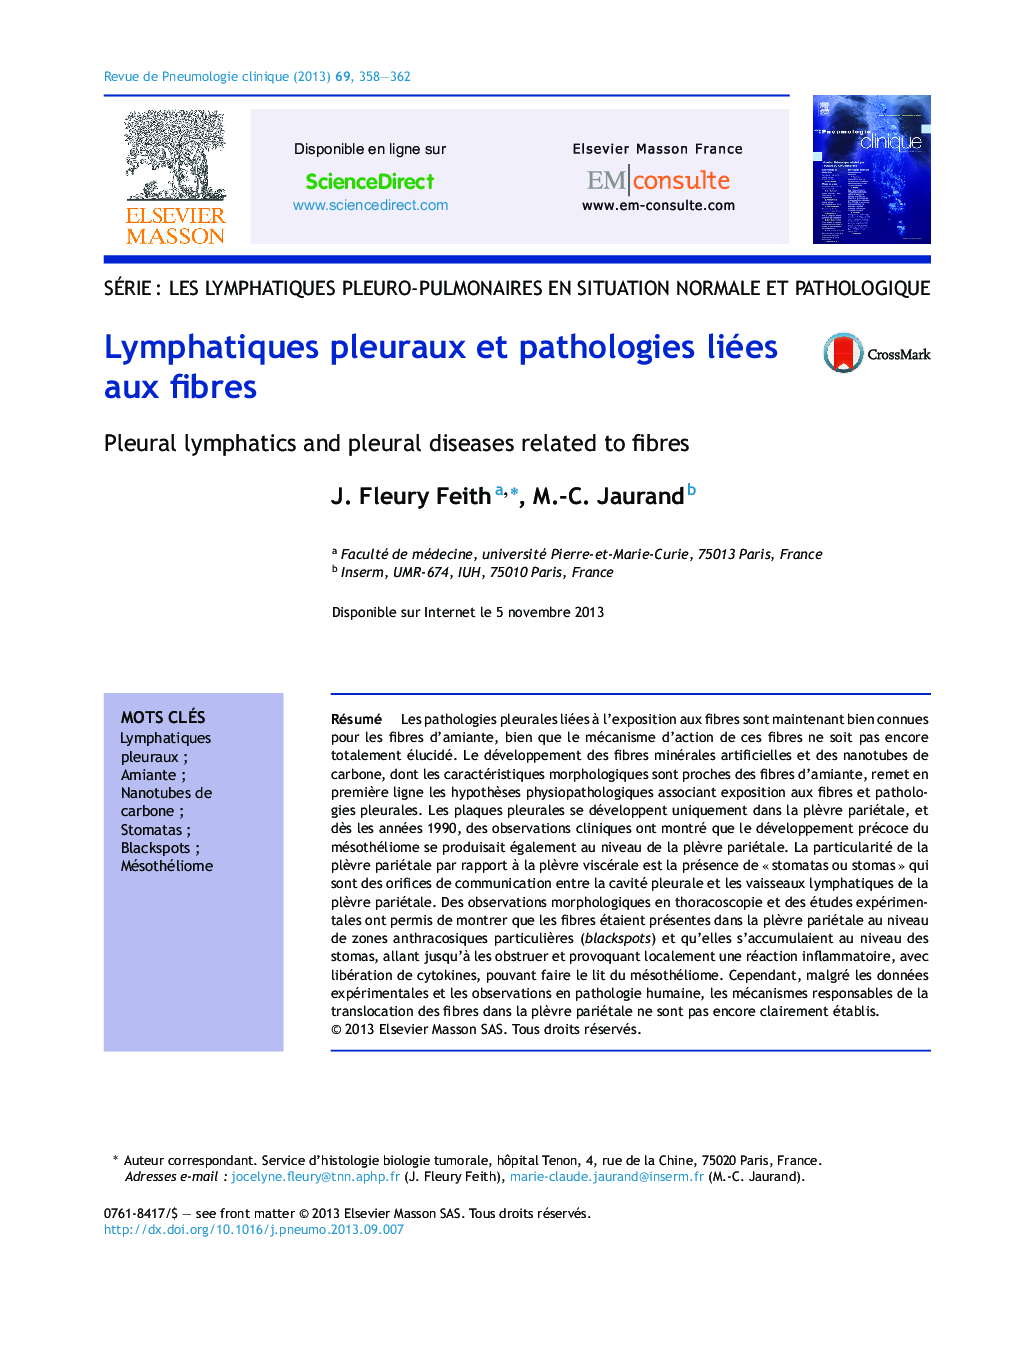 Lymphatiques pleuraux et pathologies liées aux fibres